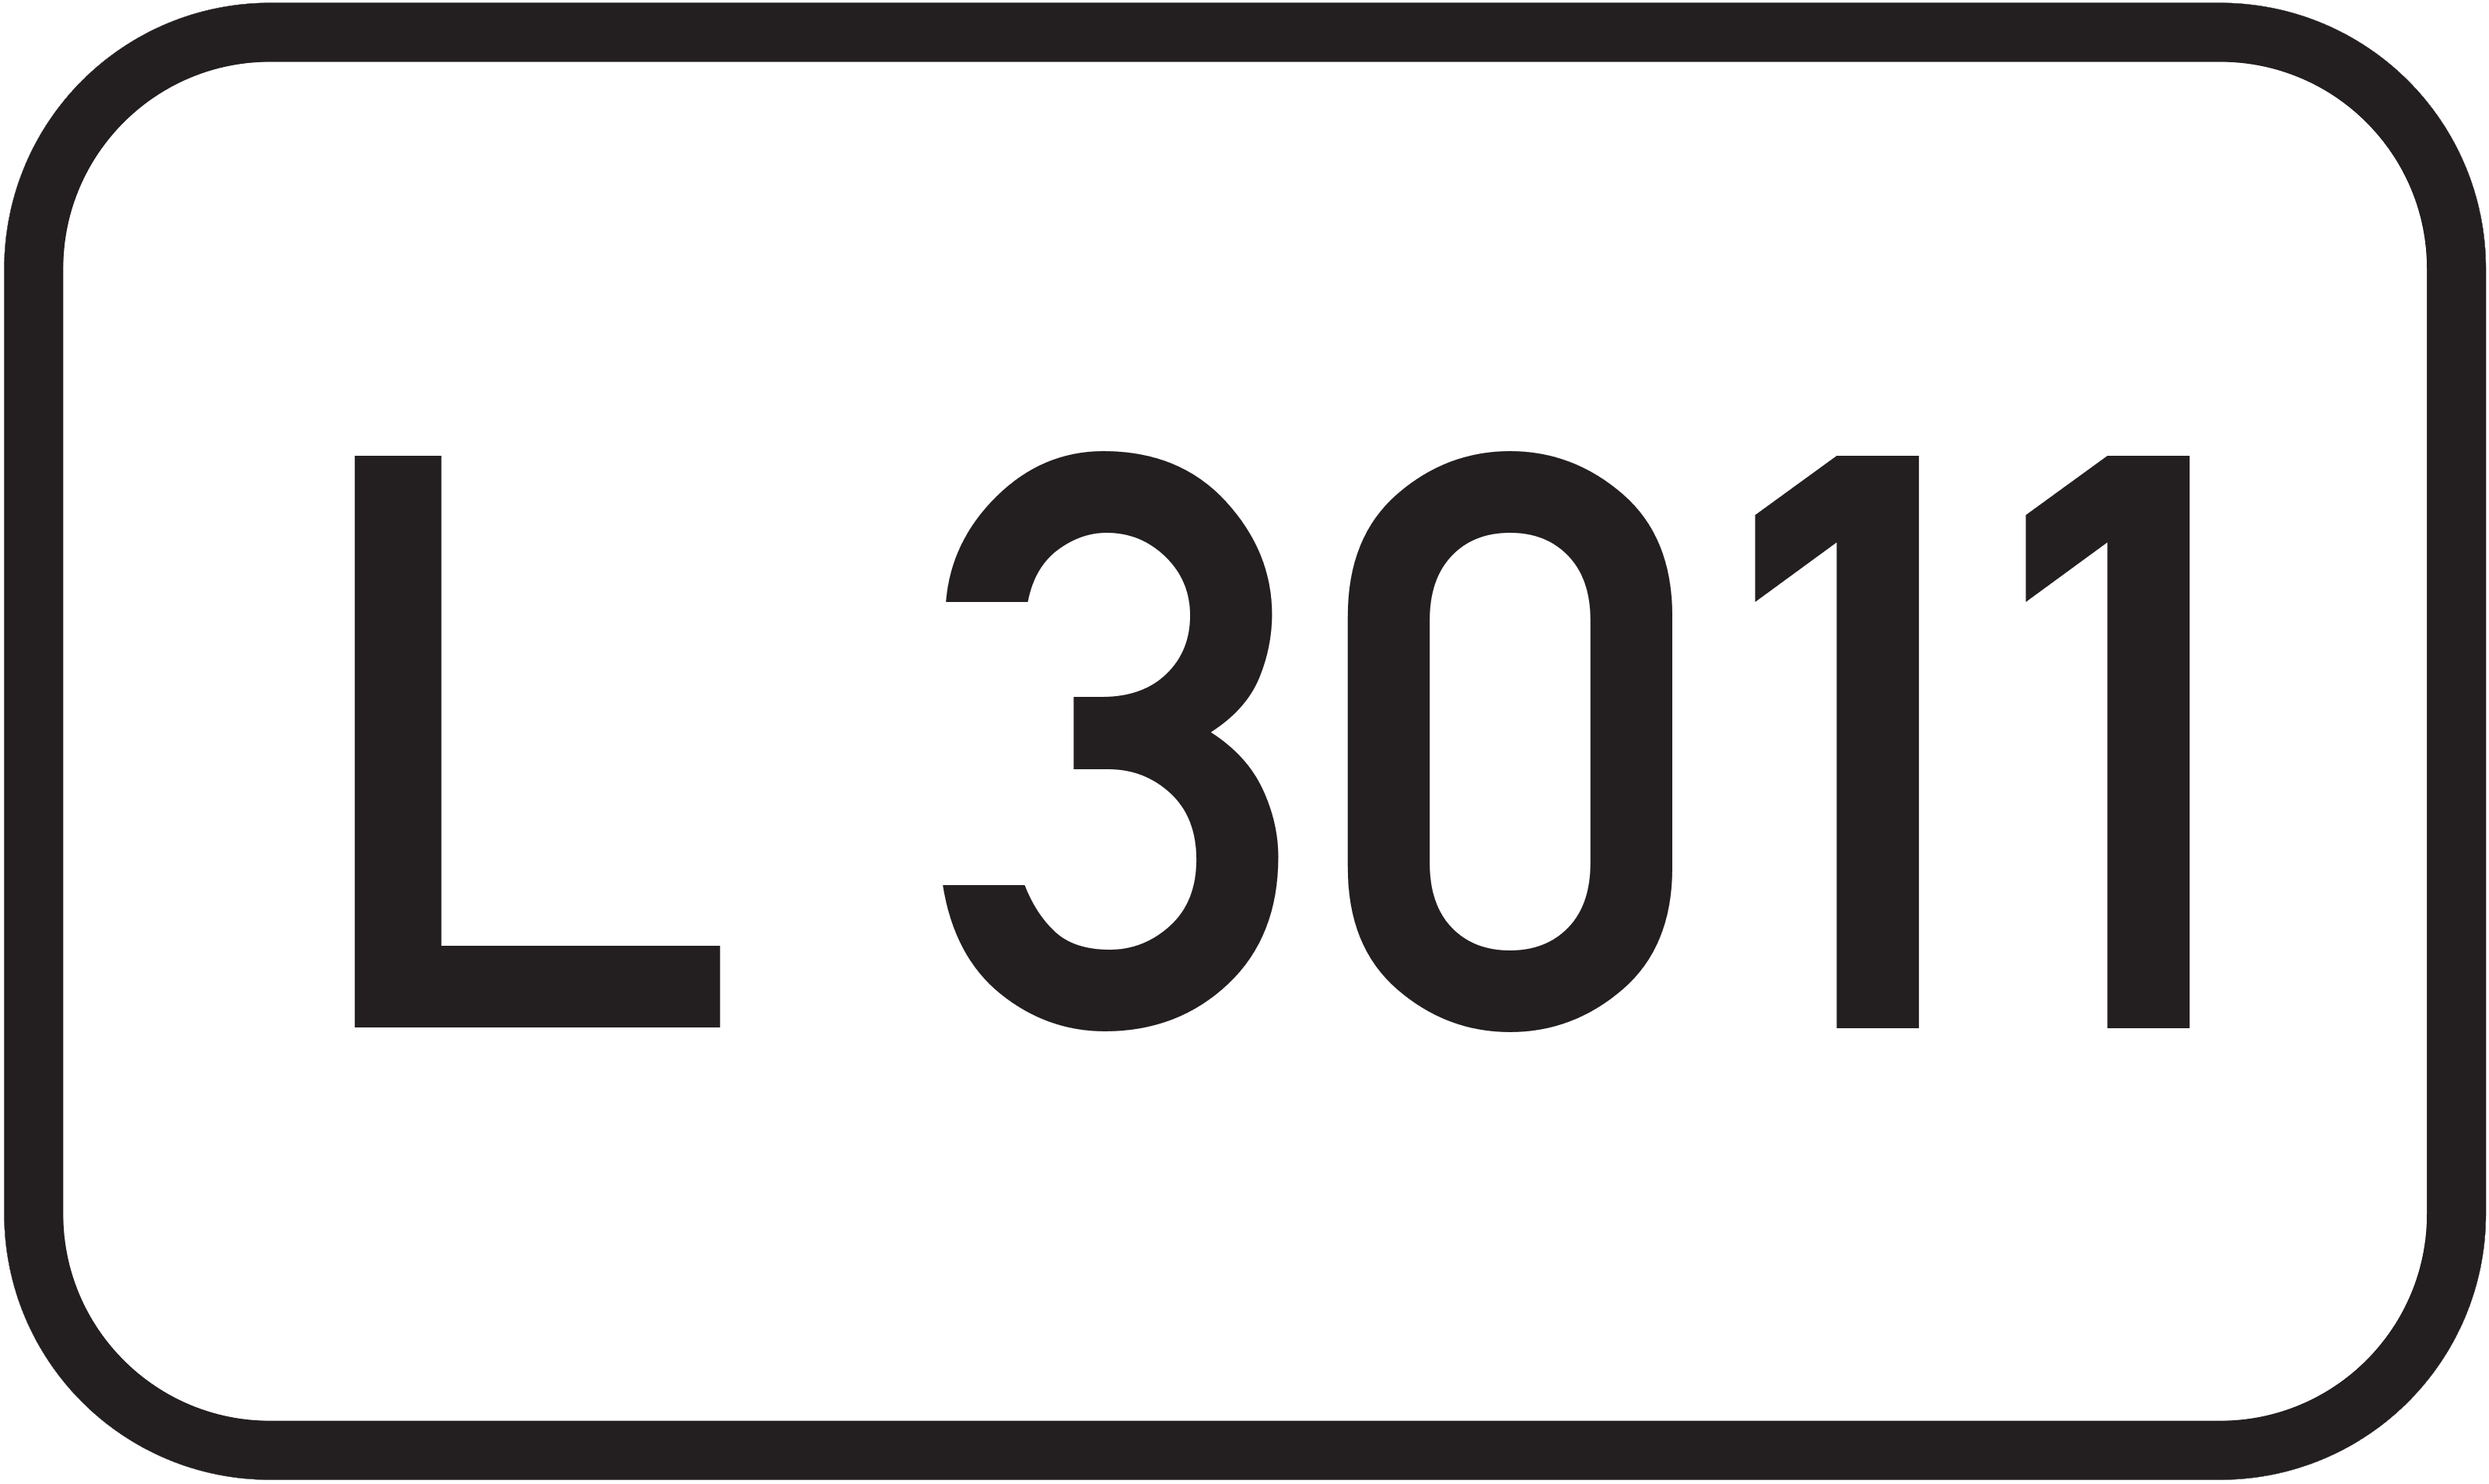 Landesstraße L 3011